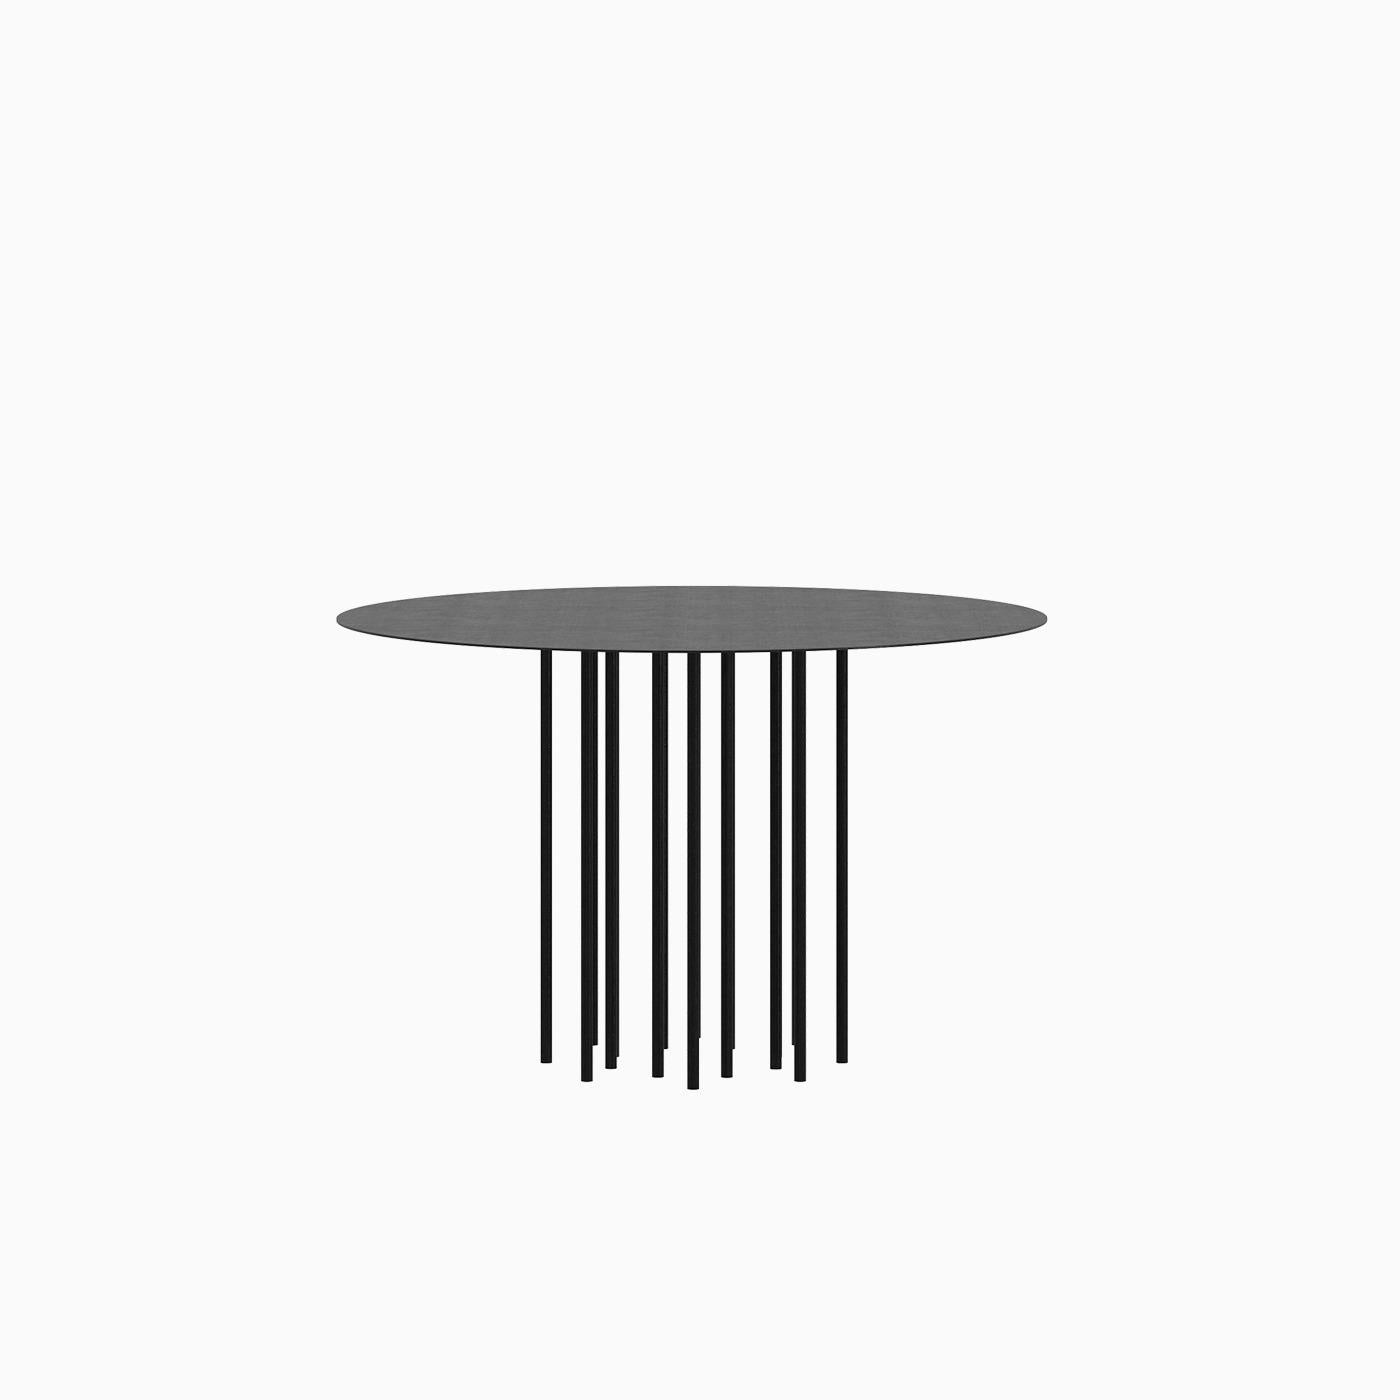 Der Centipede Dining Table ist ein monolithisches Stück, das als Esstisch für den Innen- und Außenbereich konzipiert wurde. 
Von Hand aus Metall gefertigt und mit einer matten elektrostatischen Beschichtung versehen, kann sein Durchmesser